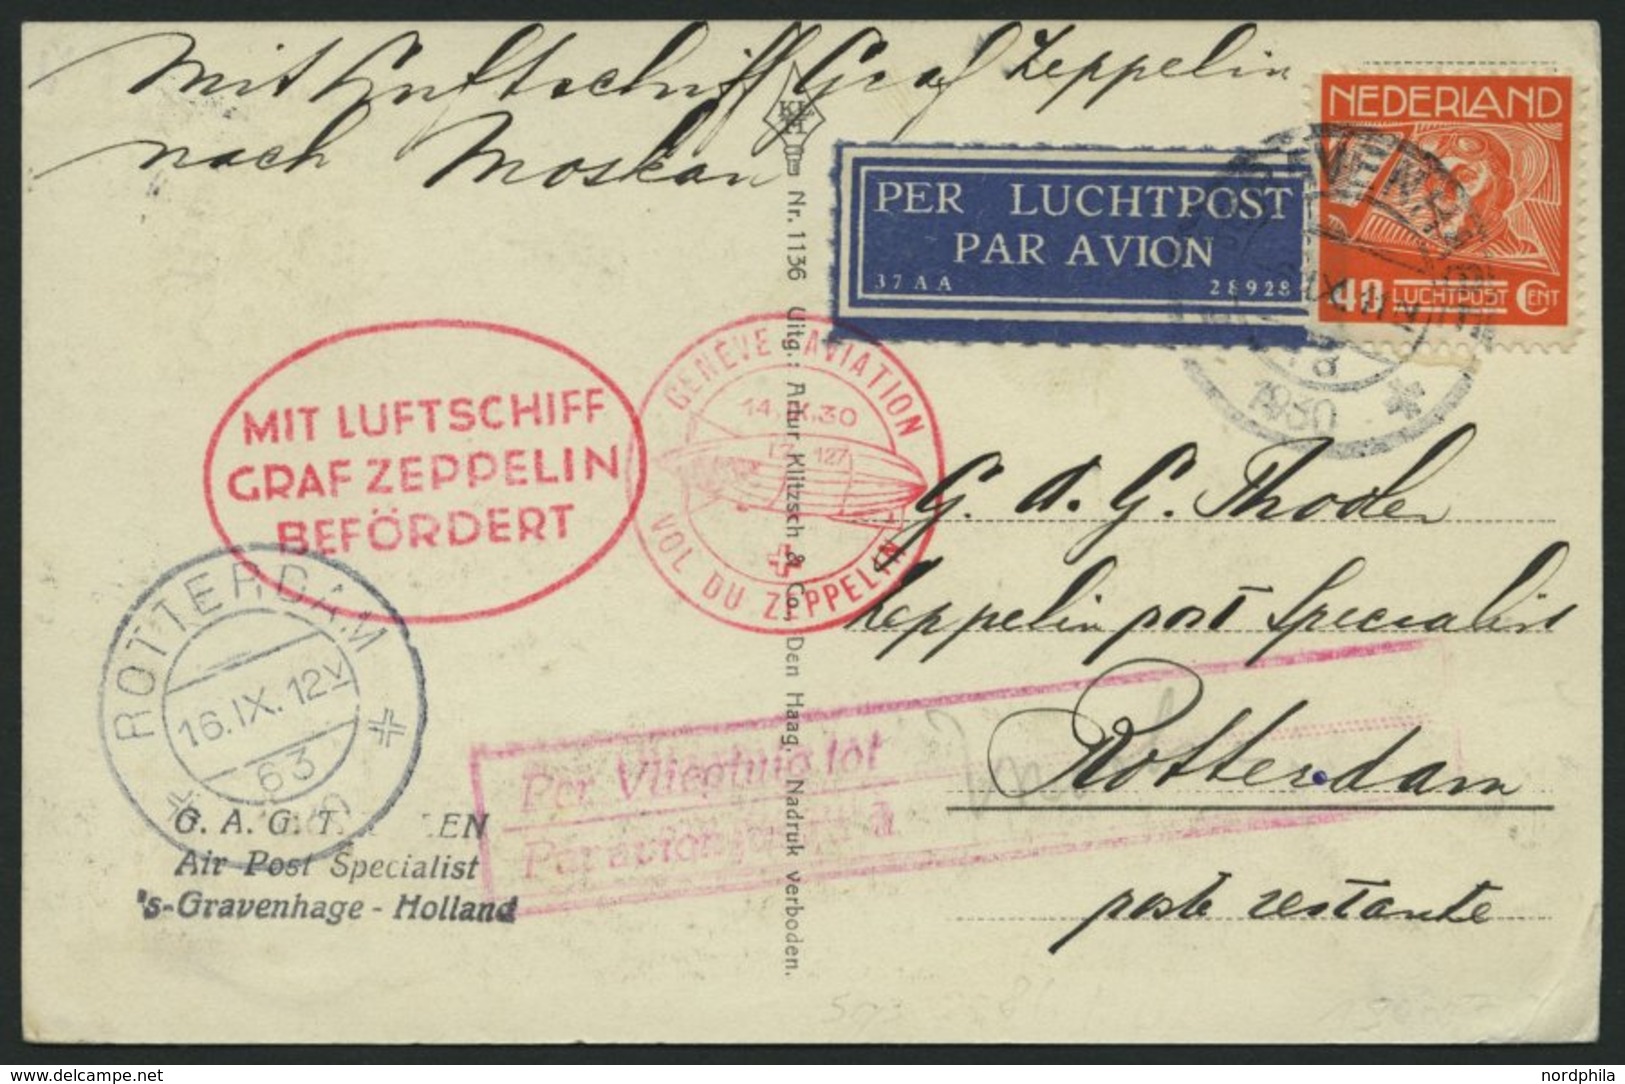 ZULEITUNGSPOST 86 BRIEF, Niederlande: 1930, Landungsfahrt Nach Genf, Prachtkarte - Poste Aérienne & Zeppelin